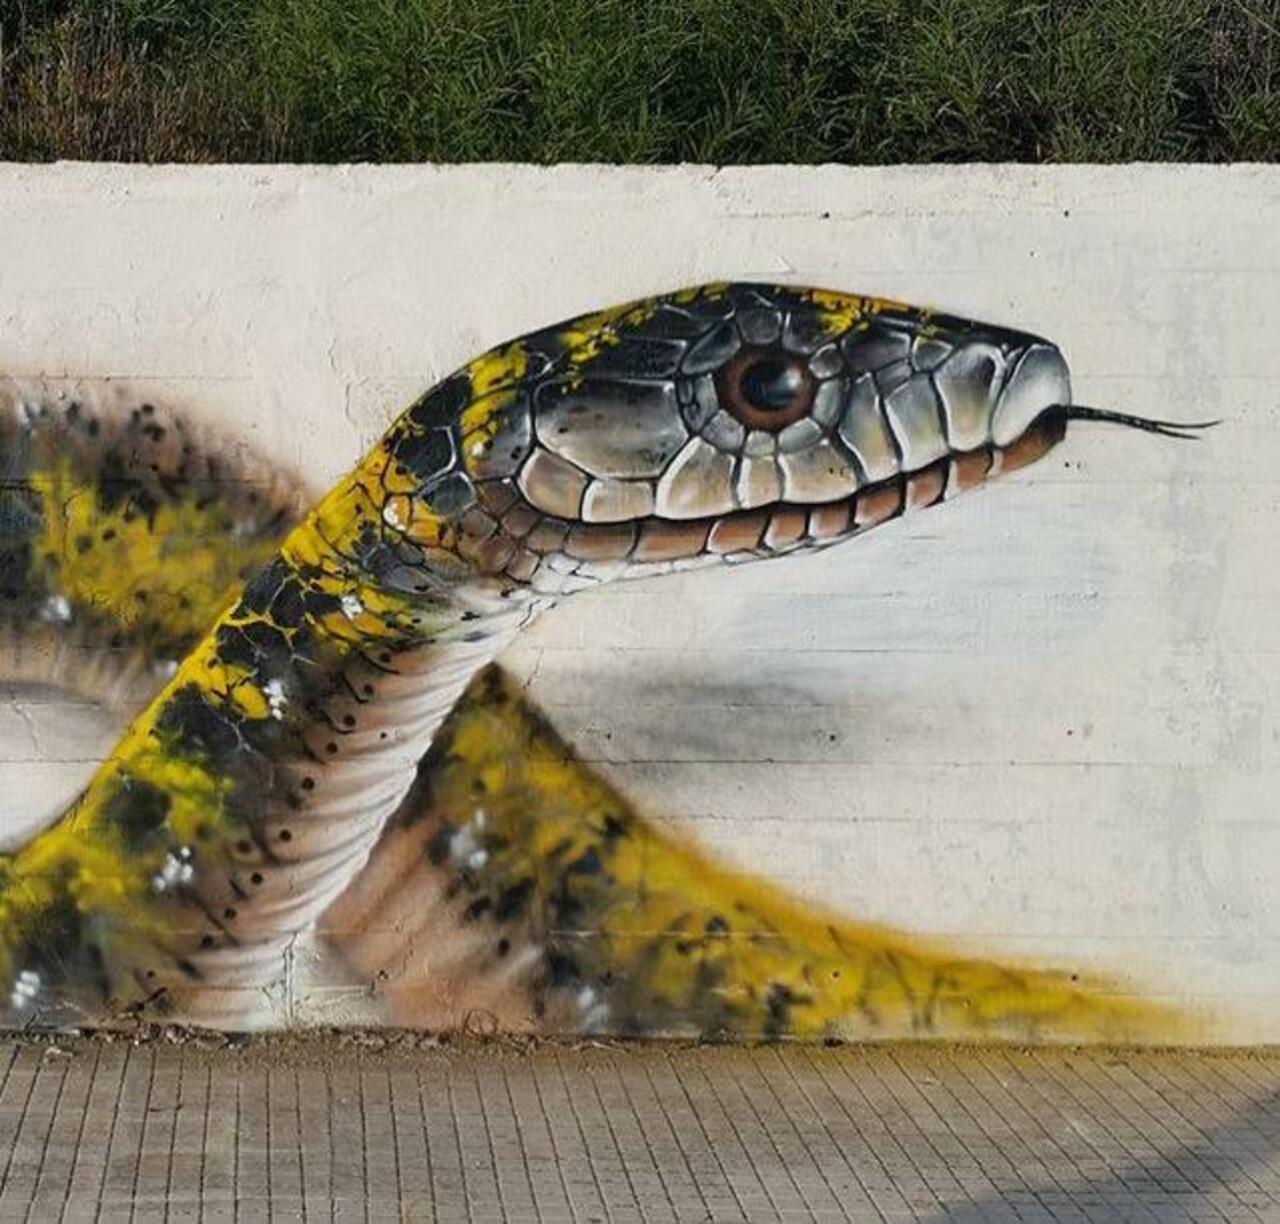 RT belilac "RT belilac "RT belilac "RT belilac "Street Art by Cosimocheone 

#art #graffiti #mural #streetart http://t.co/CcF02EUNeT""""